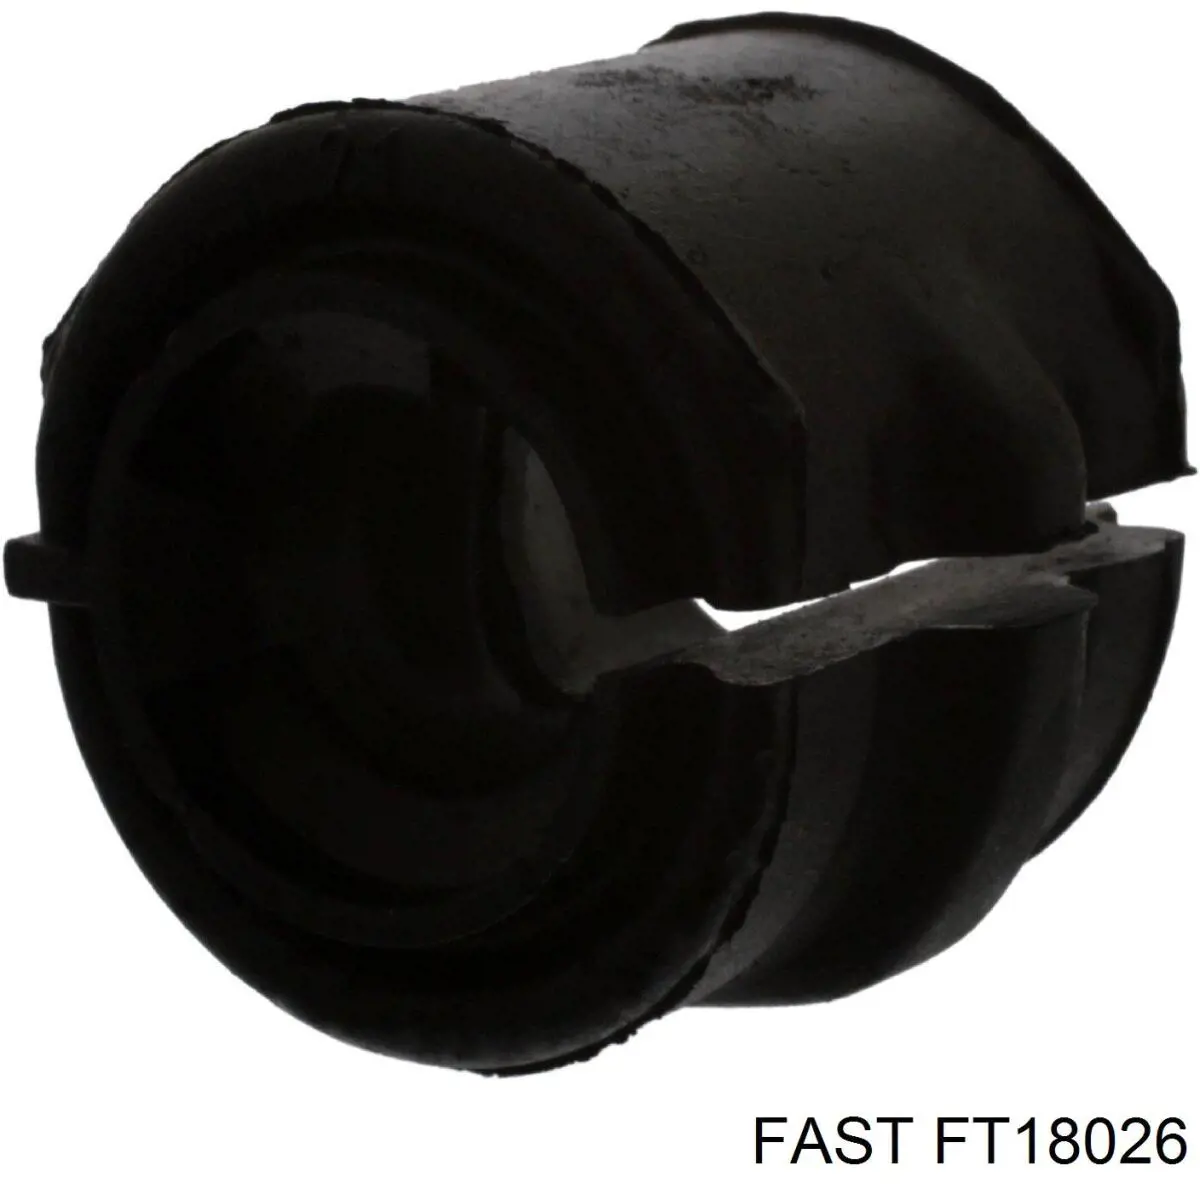 FT18026 Fast bucha de estabilizador dianteiro